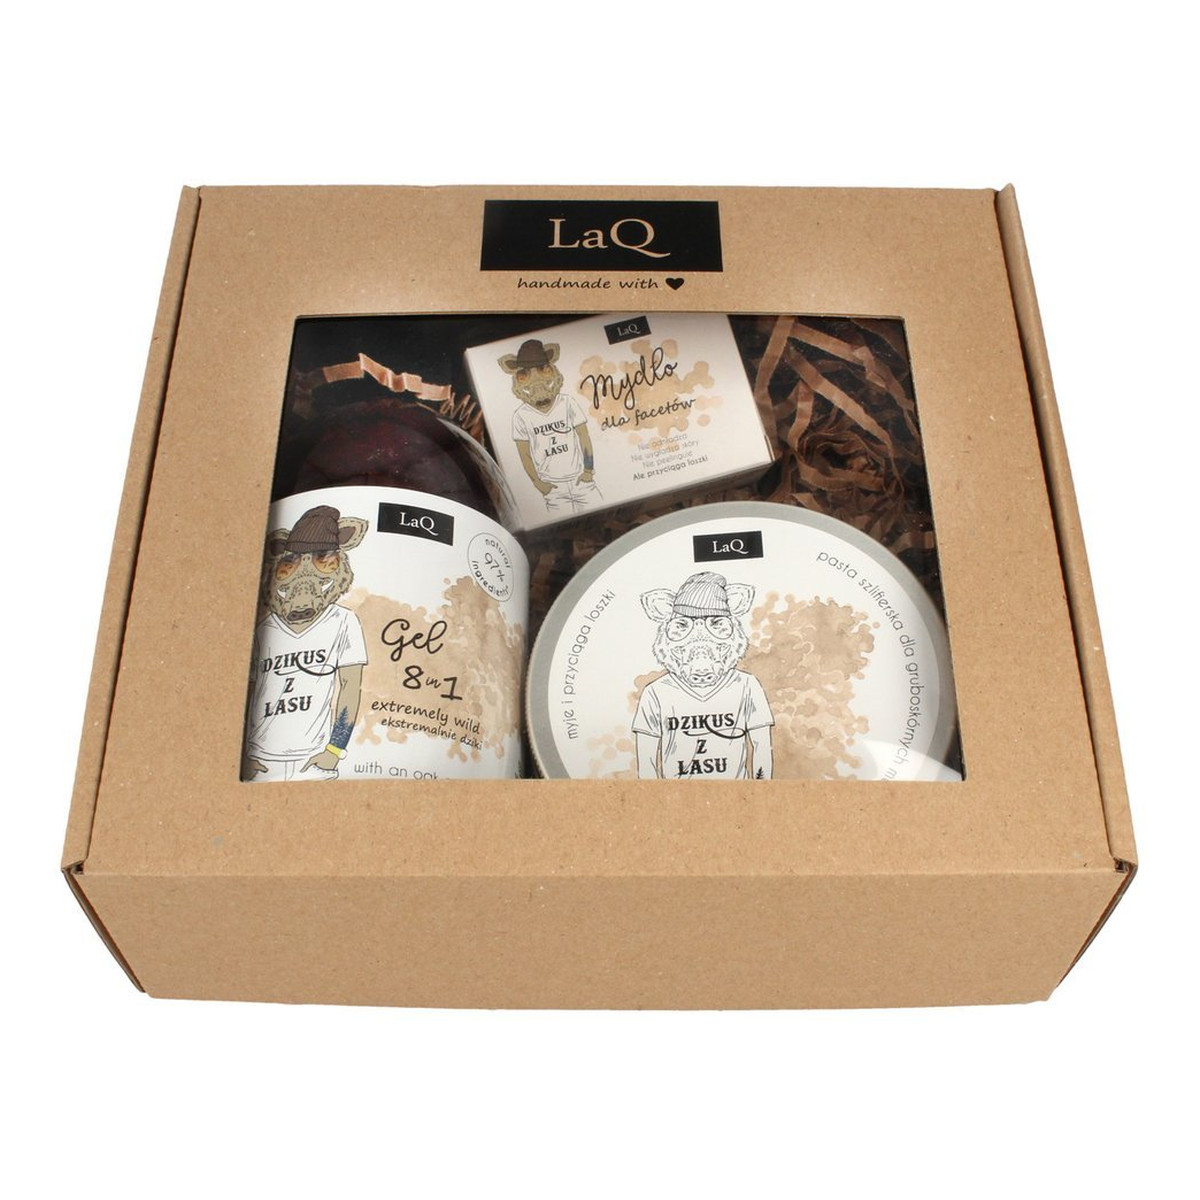 Laq Zestaw prezentowy dla mężczyzn Dzikus z Lasu (pasta 200ml+żel pod prysznic 8w1 500ml+mydło 85ml)